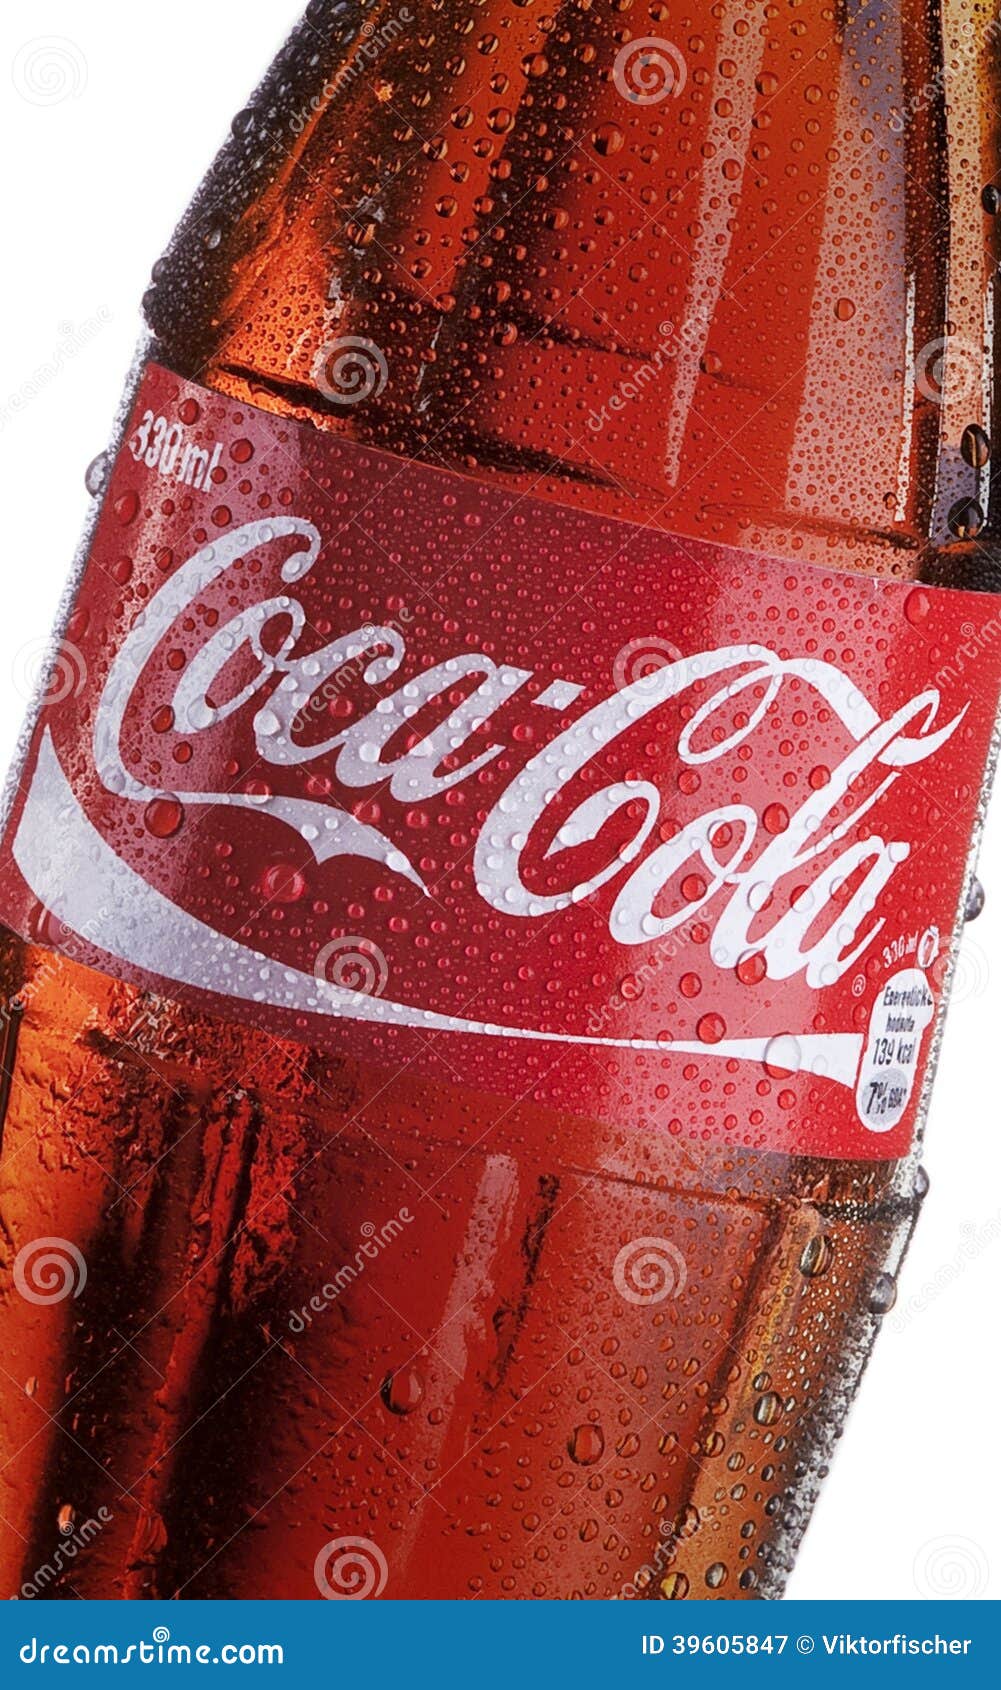 Coca Colaflasche Detail Redaktionelles Stockfotografie Bild Von Coca